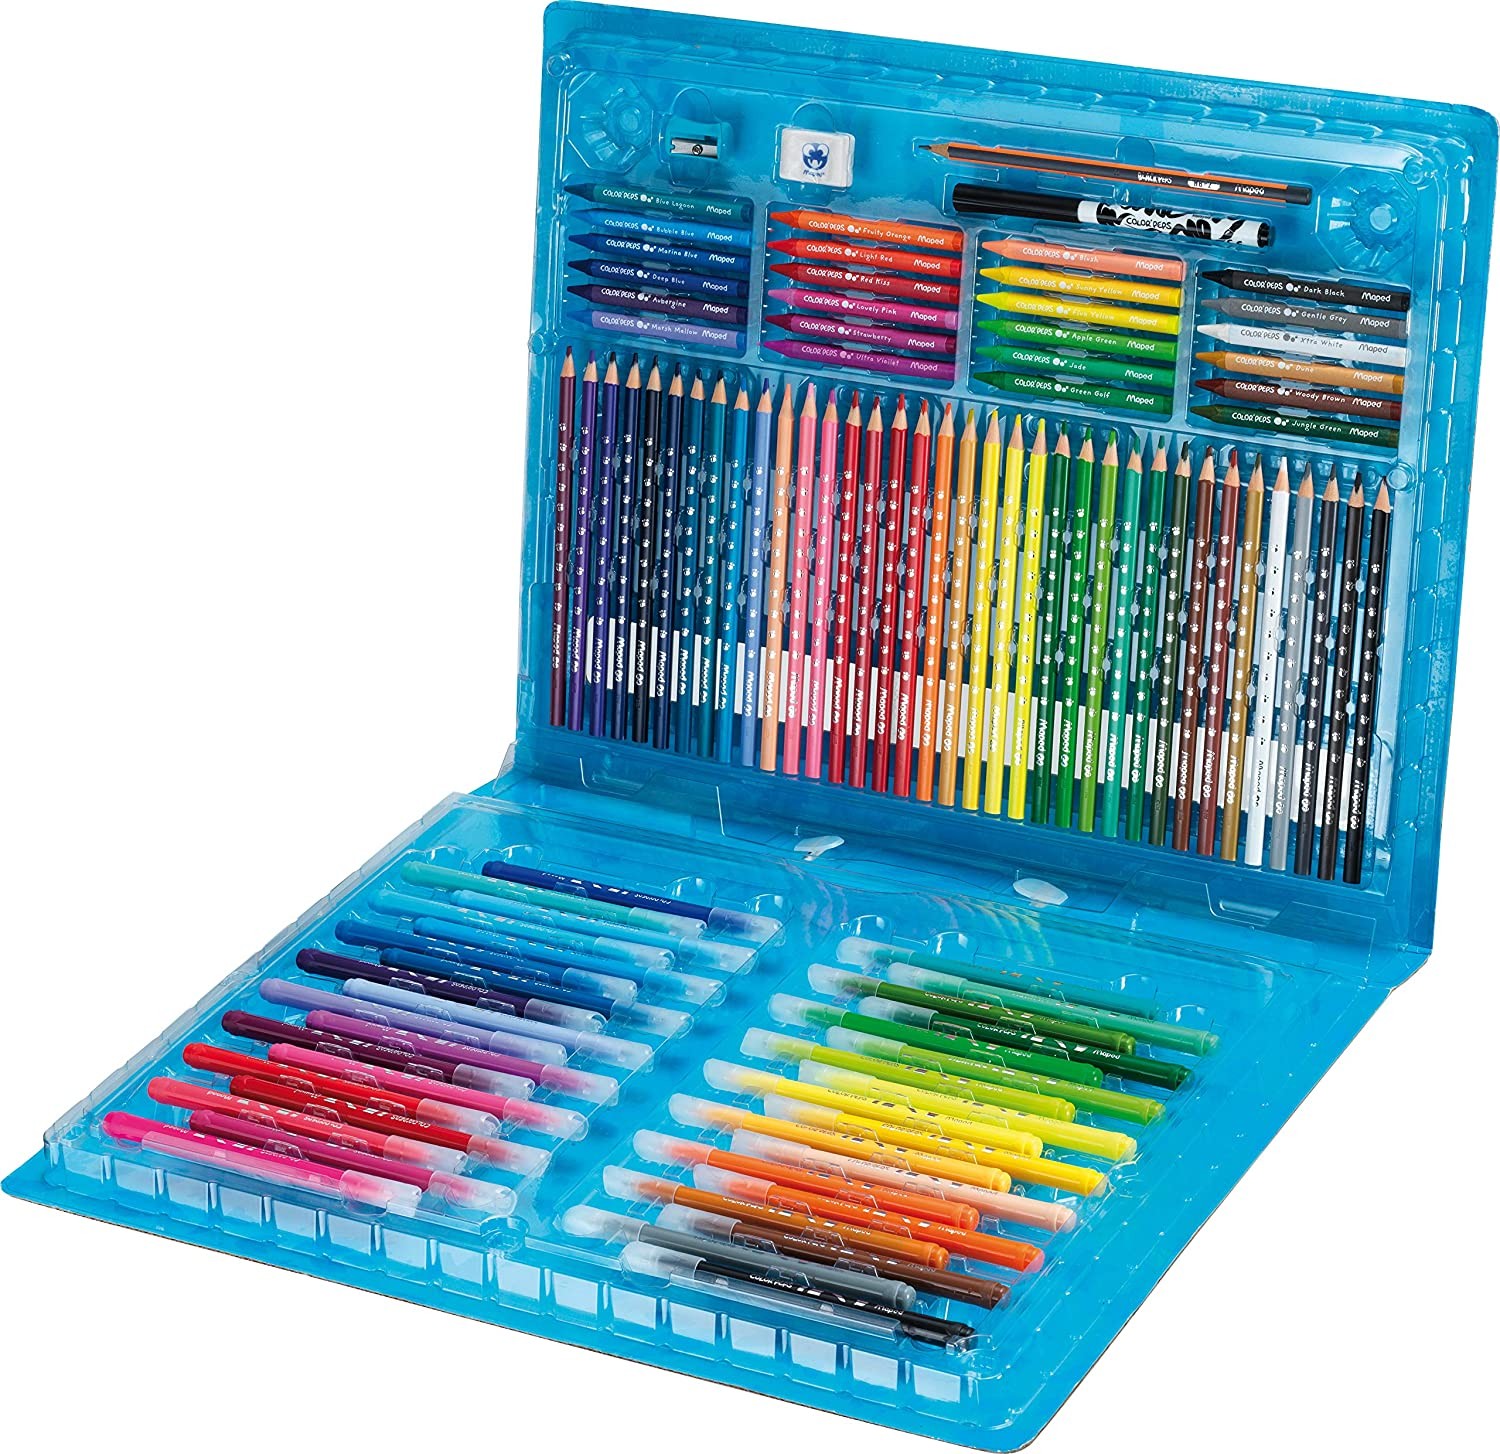 Feutre de coloriage Kid couleur x36 BIC : la boîte de 36 crayons à